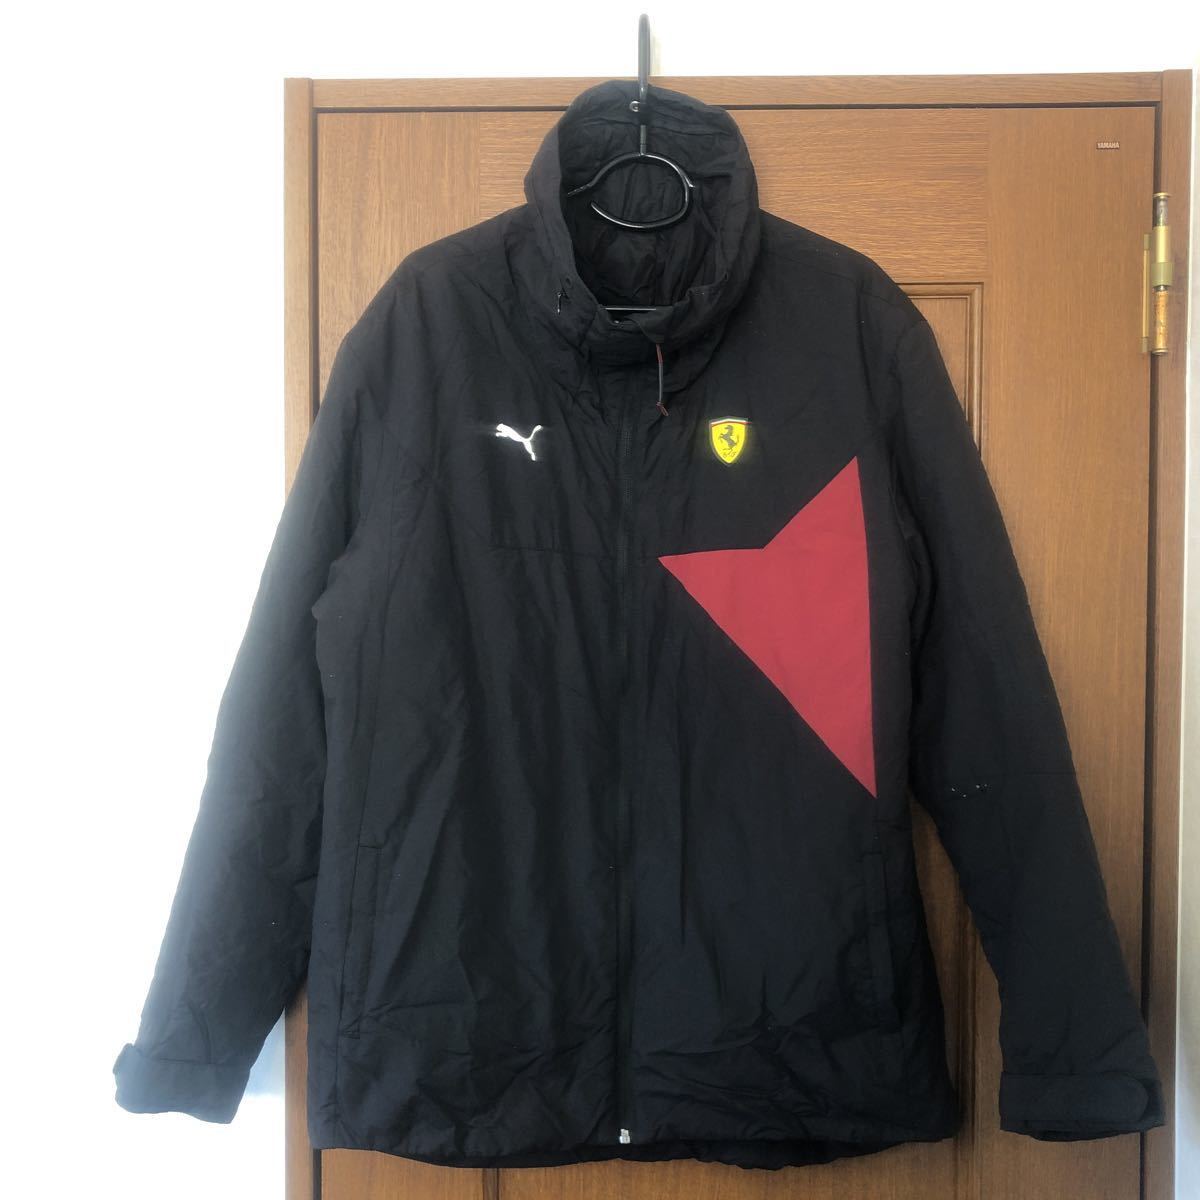  prompt decision PUMA Ferrari half coat jacket 